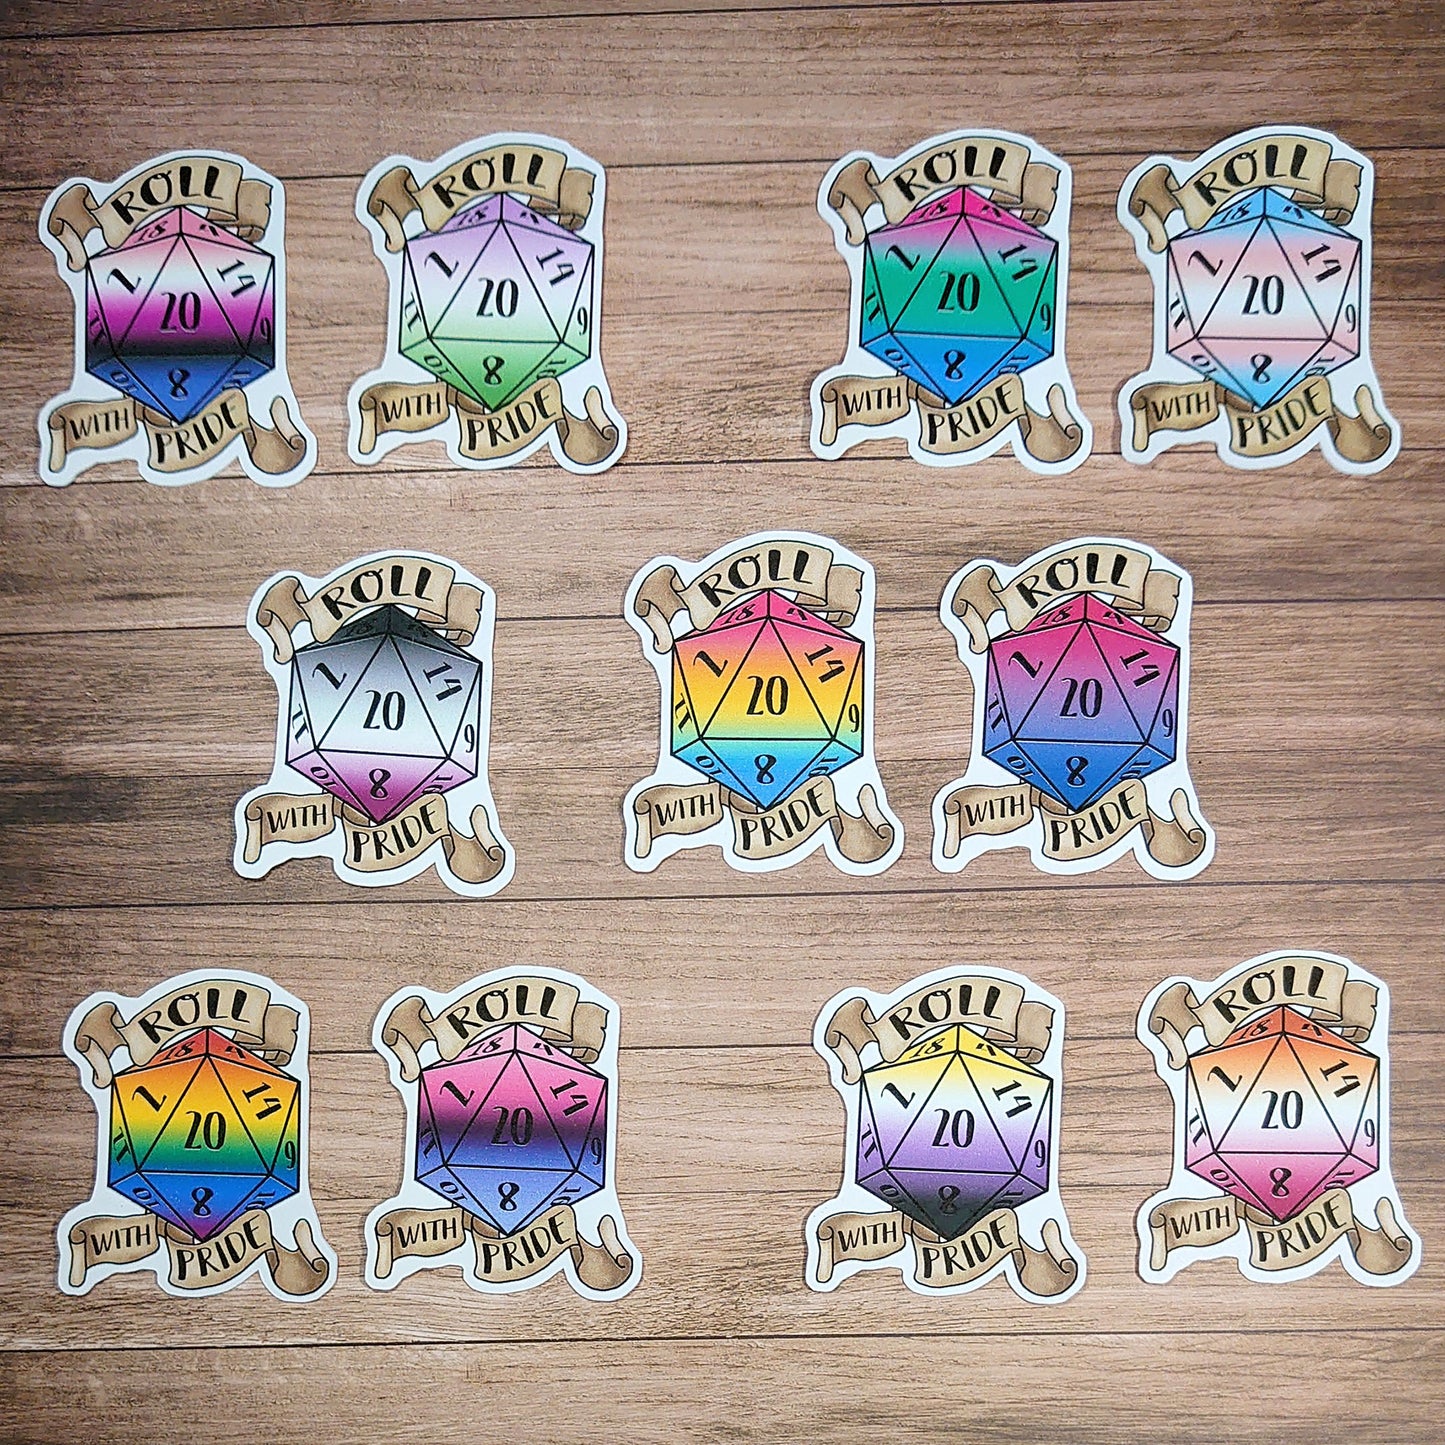 Regenbogen/Gay/Schwul - D20 Pride Sticker - Deko, Rollenspiel, Scrapbooking Vinyl Sticker